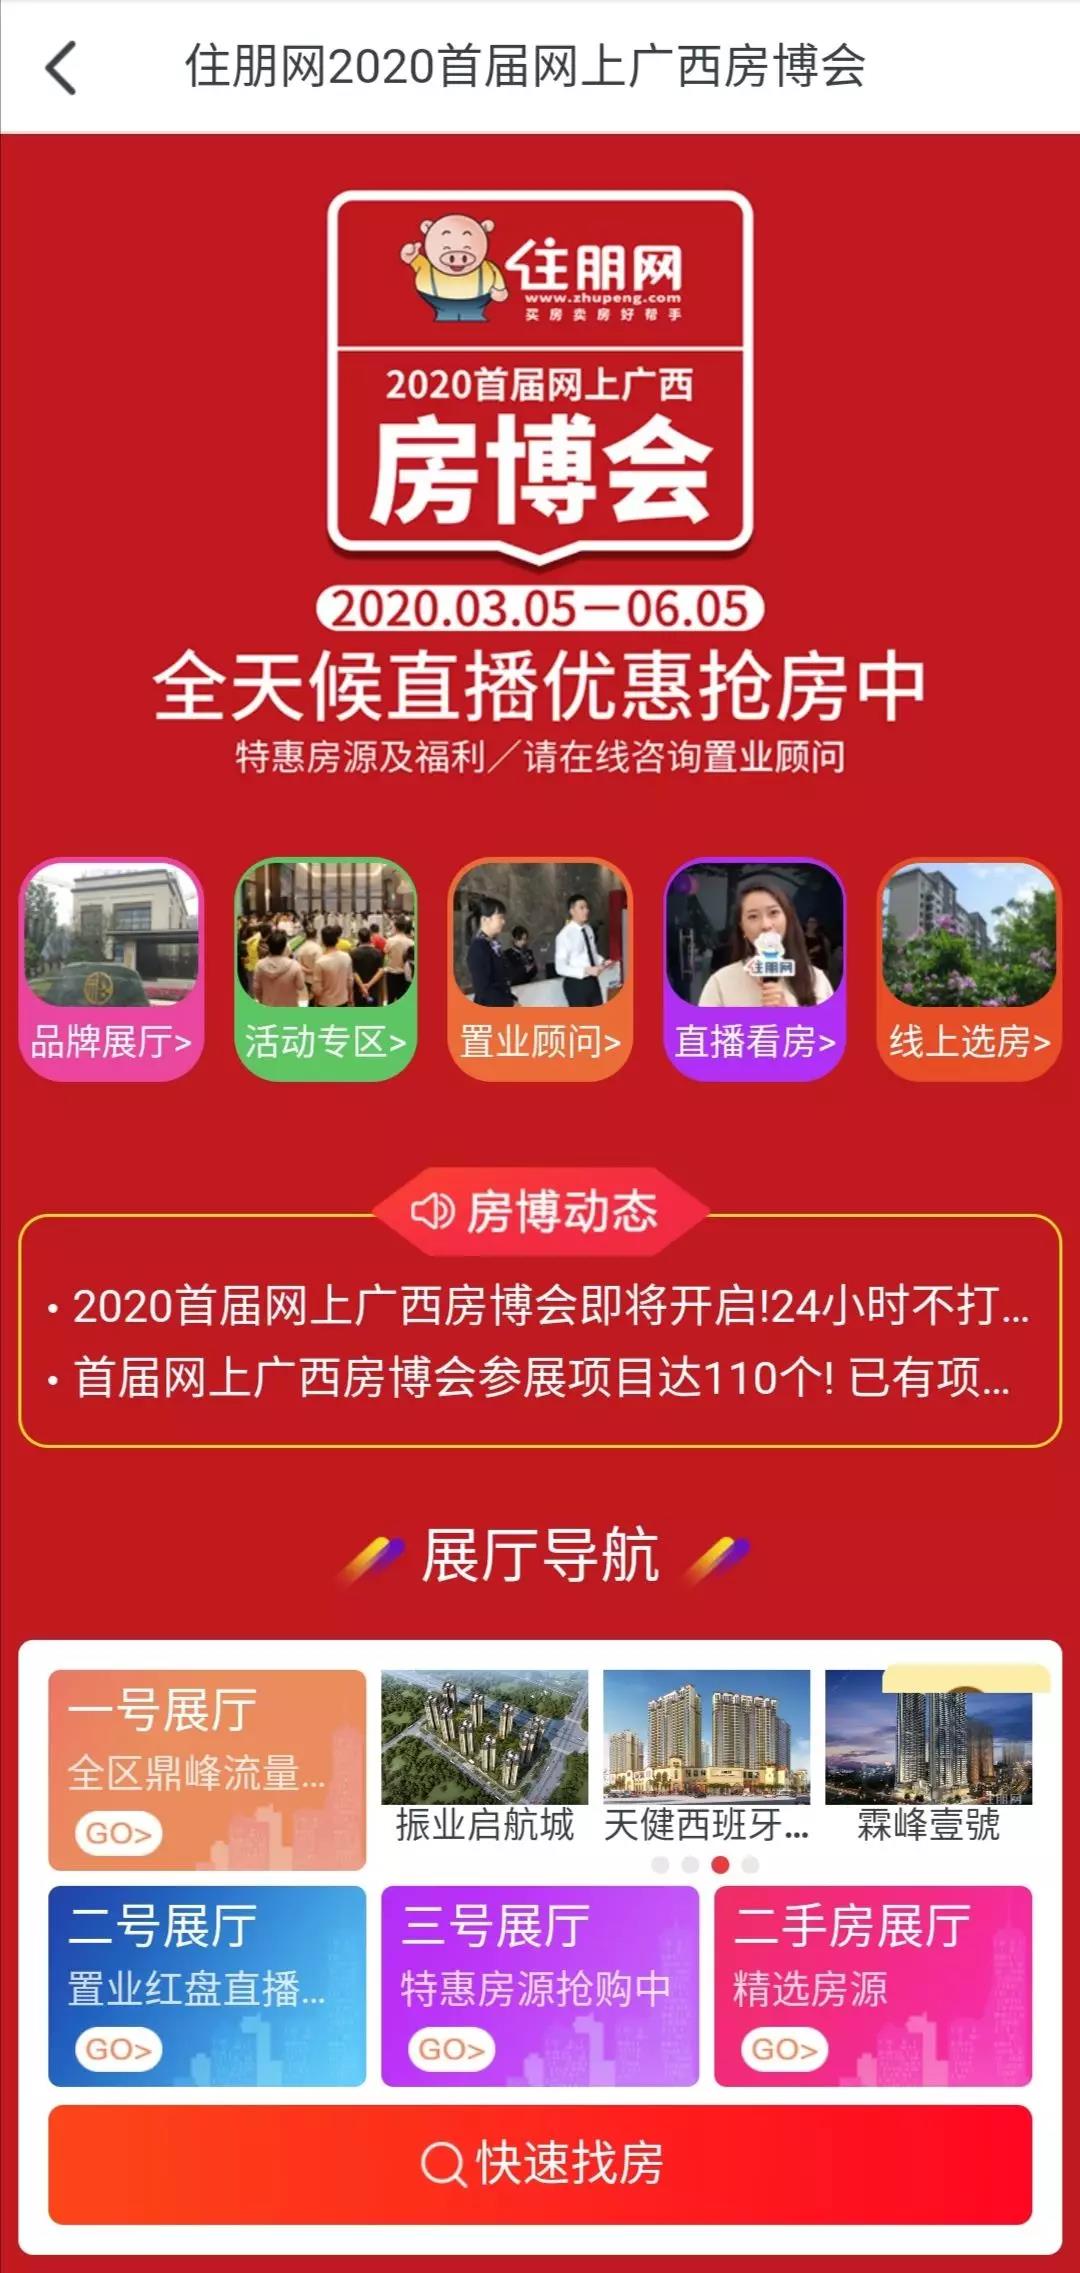 2020首届网上广西房博会